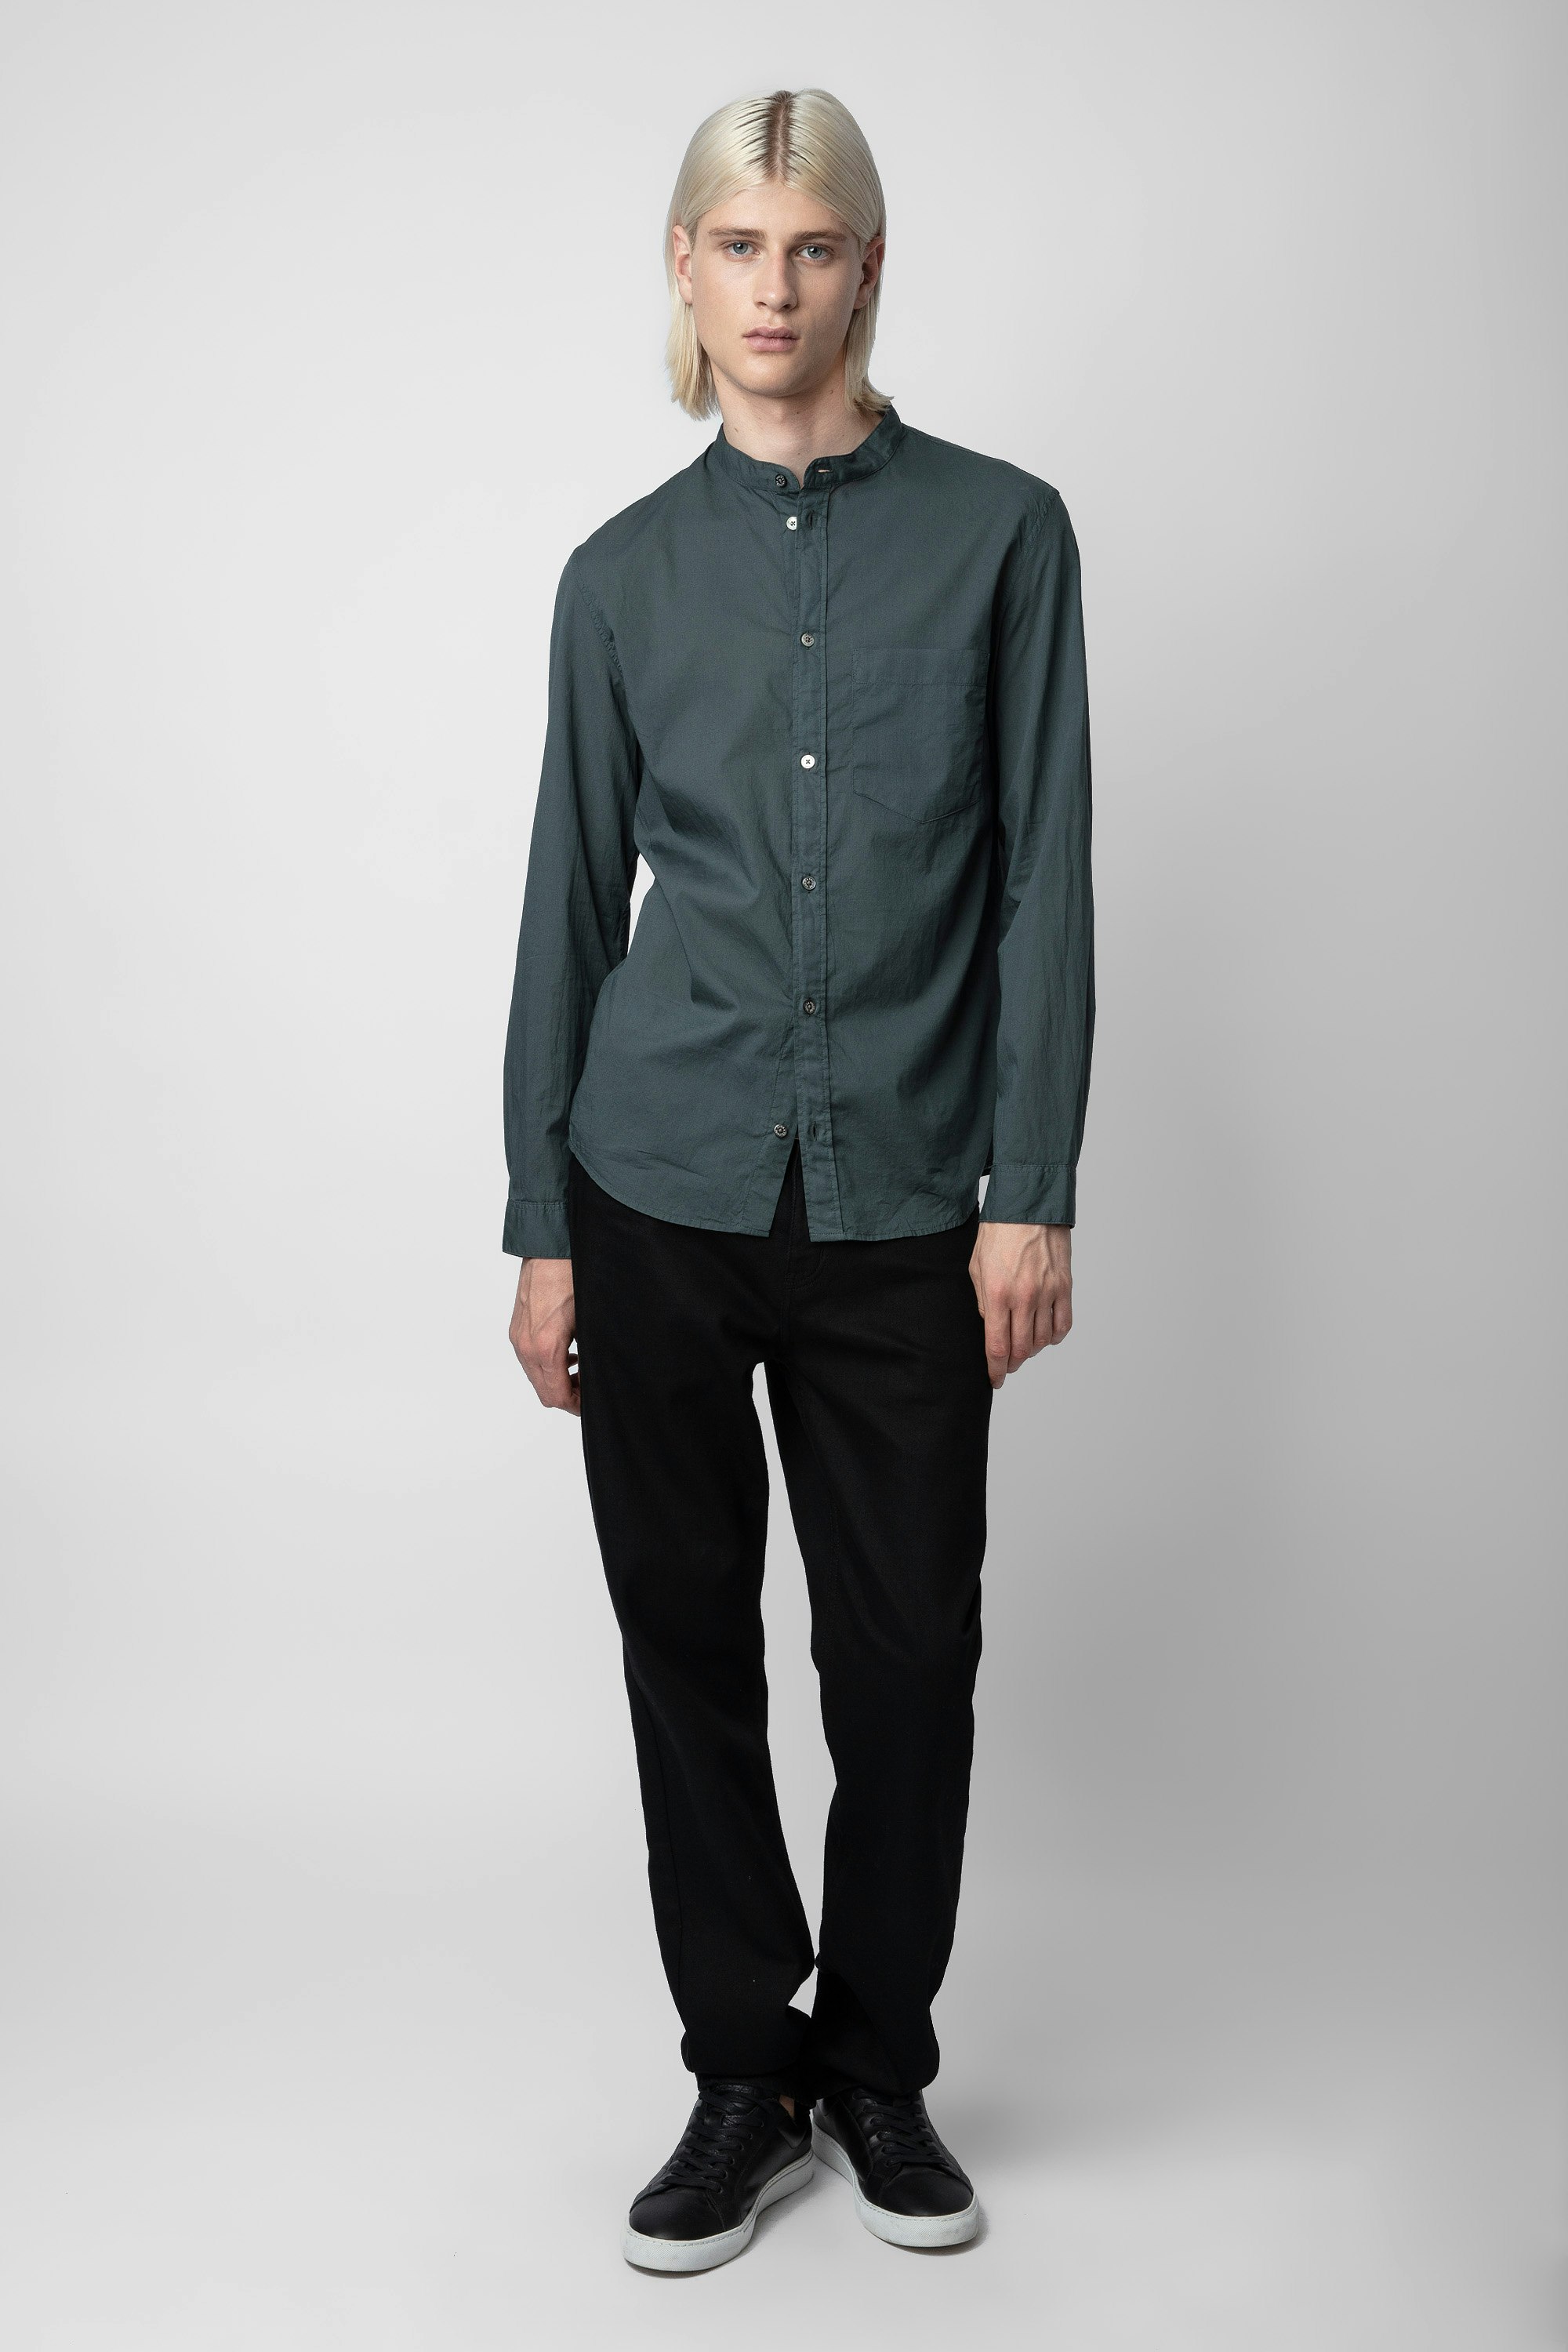 Camicia Thibault - Camicia in cotone verde da uomo.